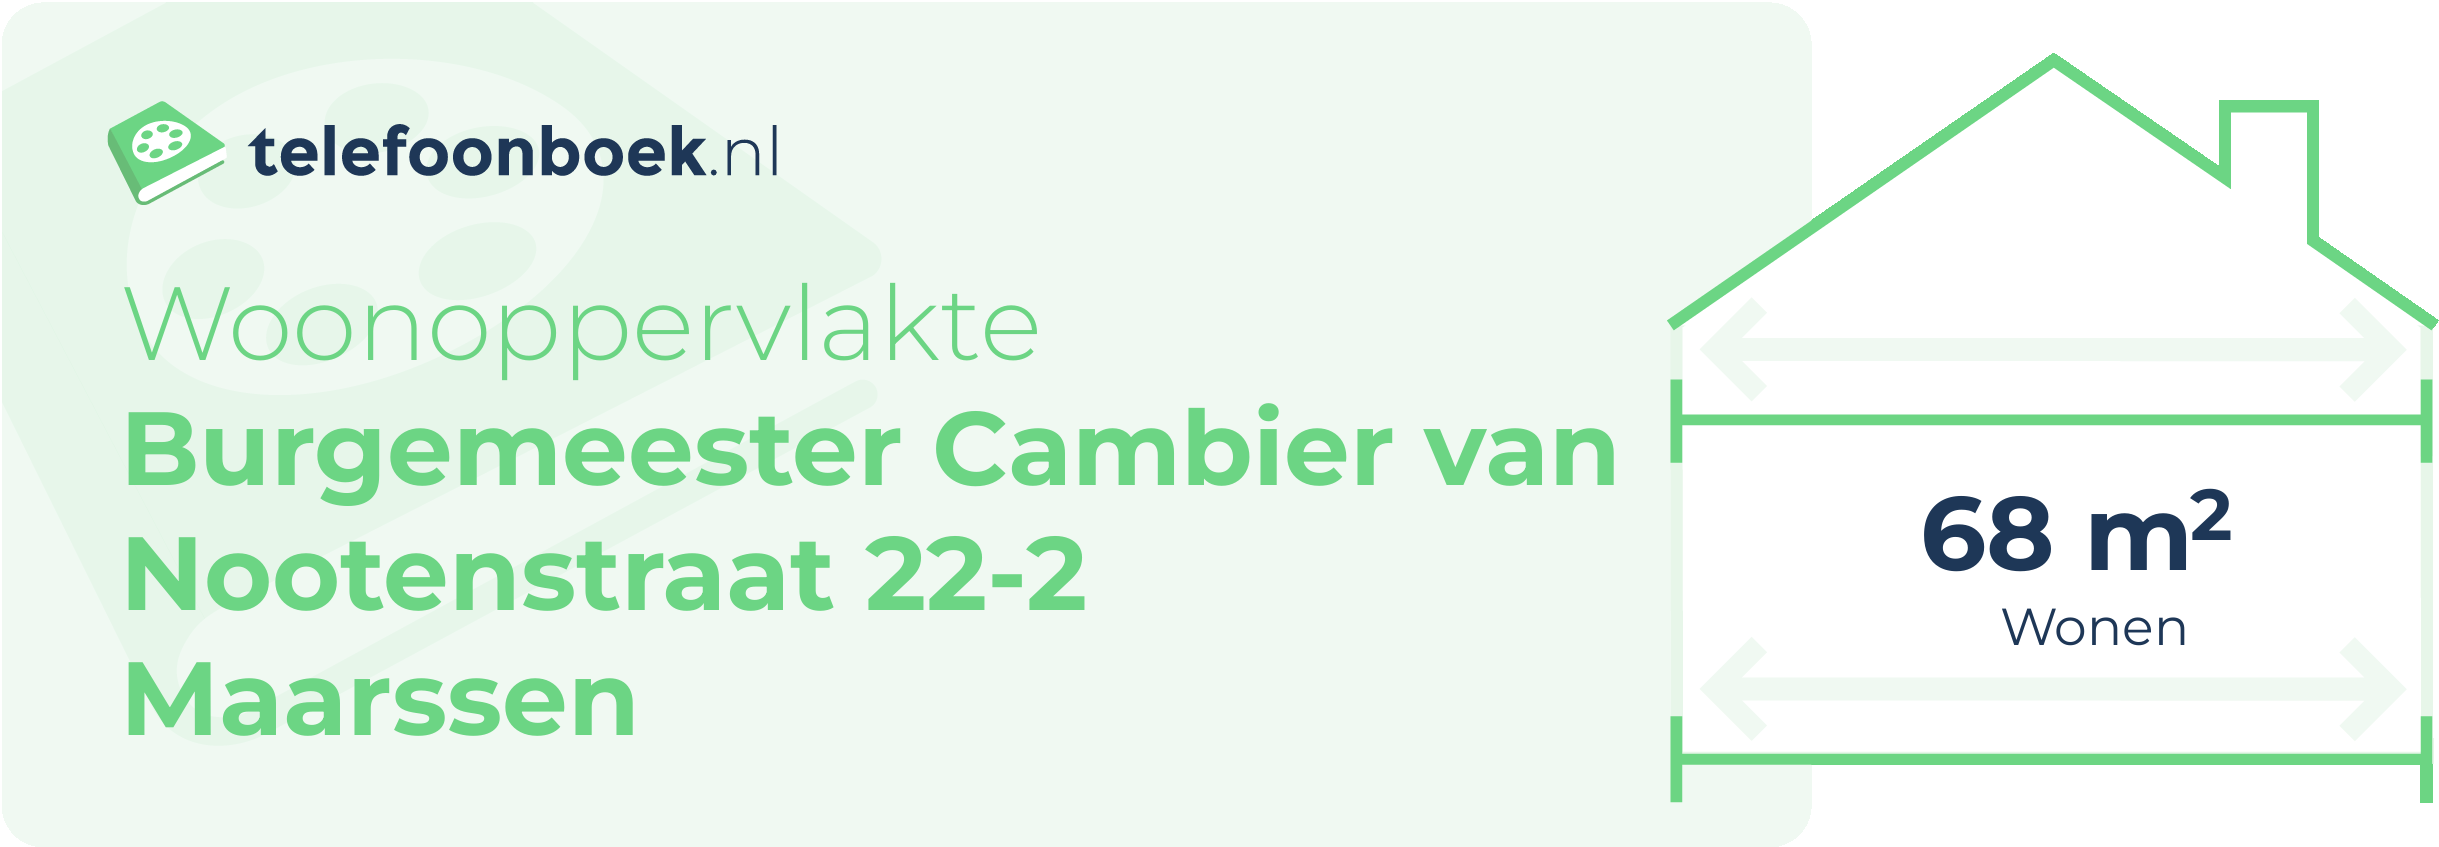 Woonoppervlakte Burgemeester Cambier Van Nootenstraat 22-2 Maarssen